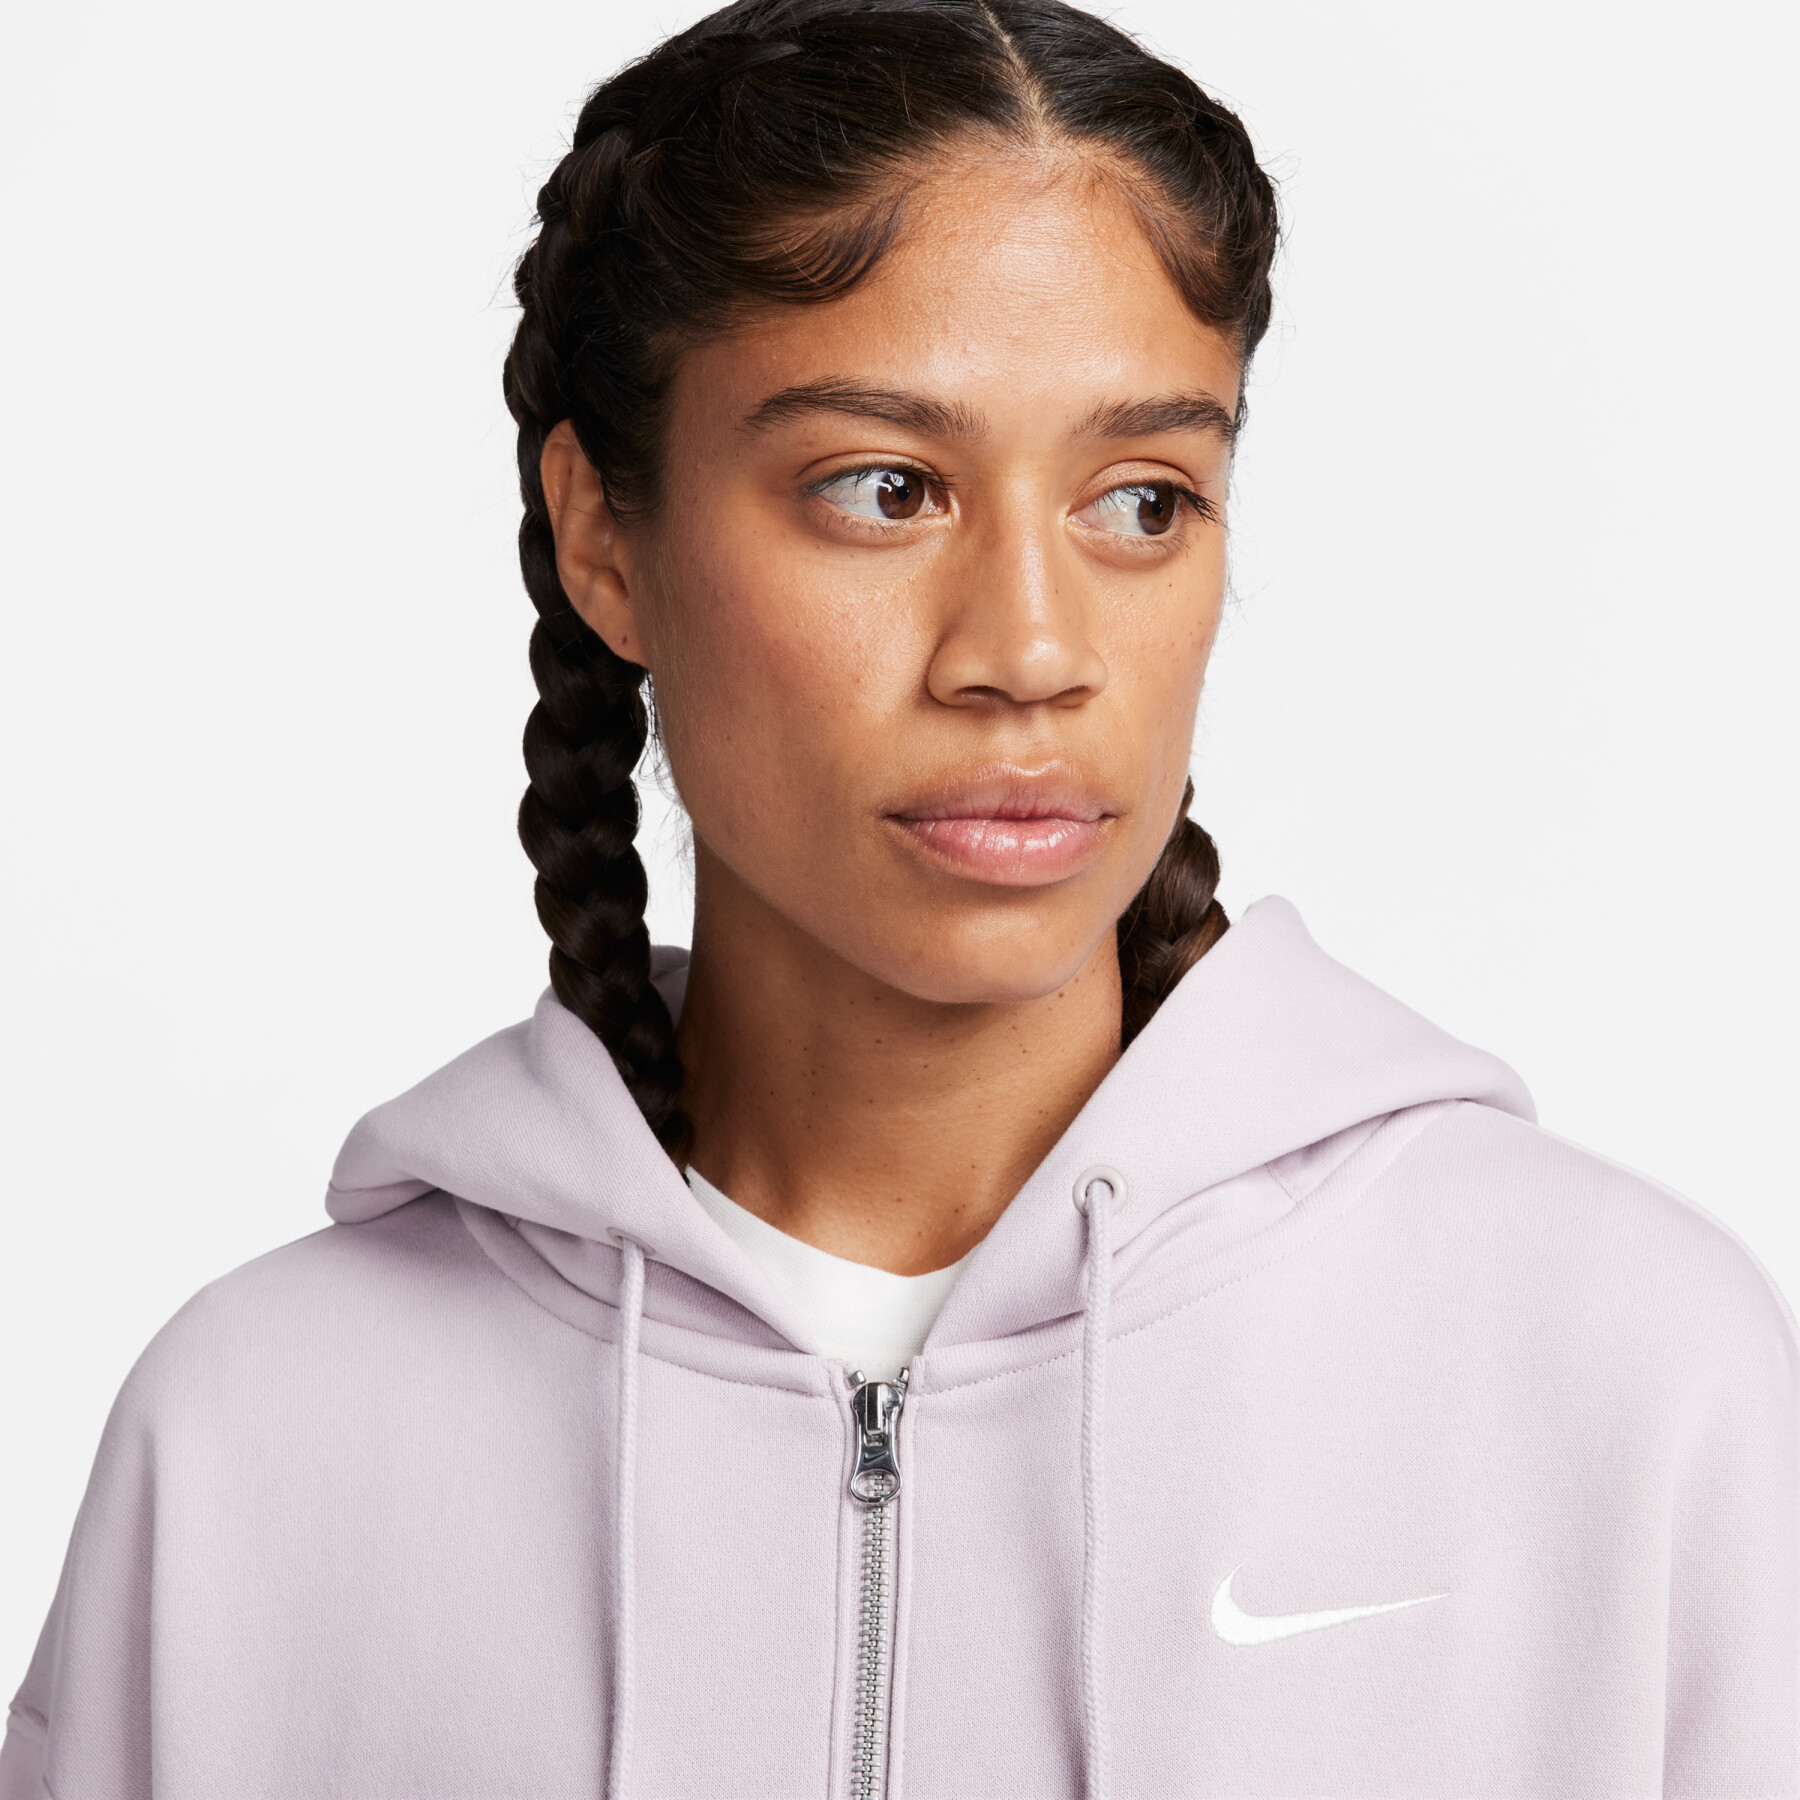 Women's oversized hooded zip sweatshirt Nike Phoenix Fleece